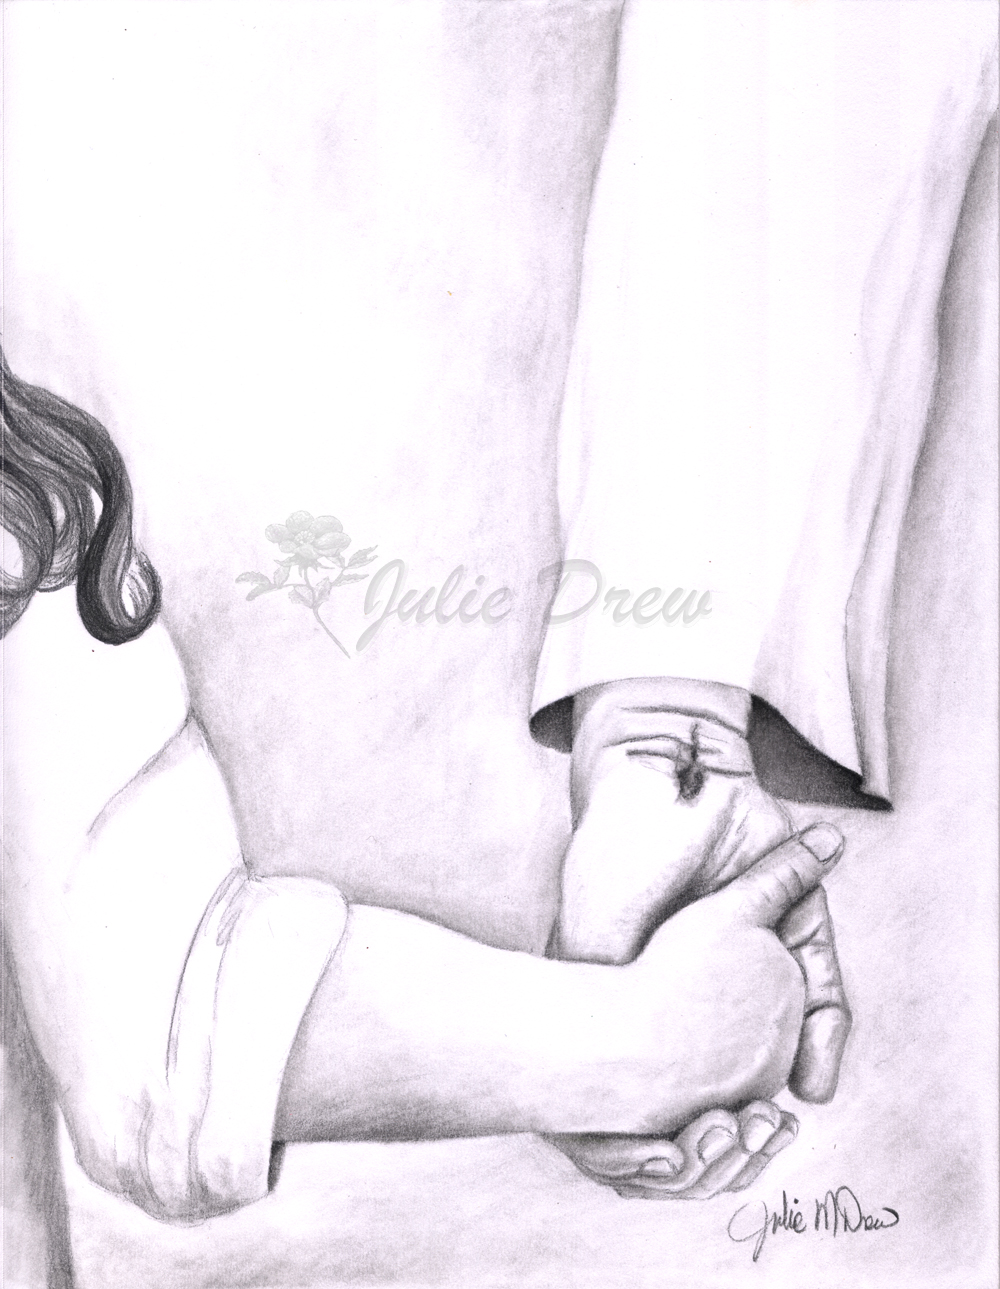 Child's hand holding Jesus hand, pencil, 12 x 9 in, artist Julie Drew